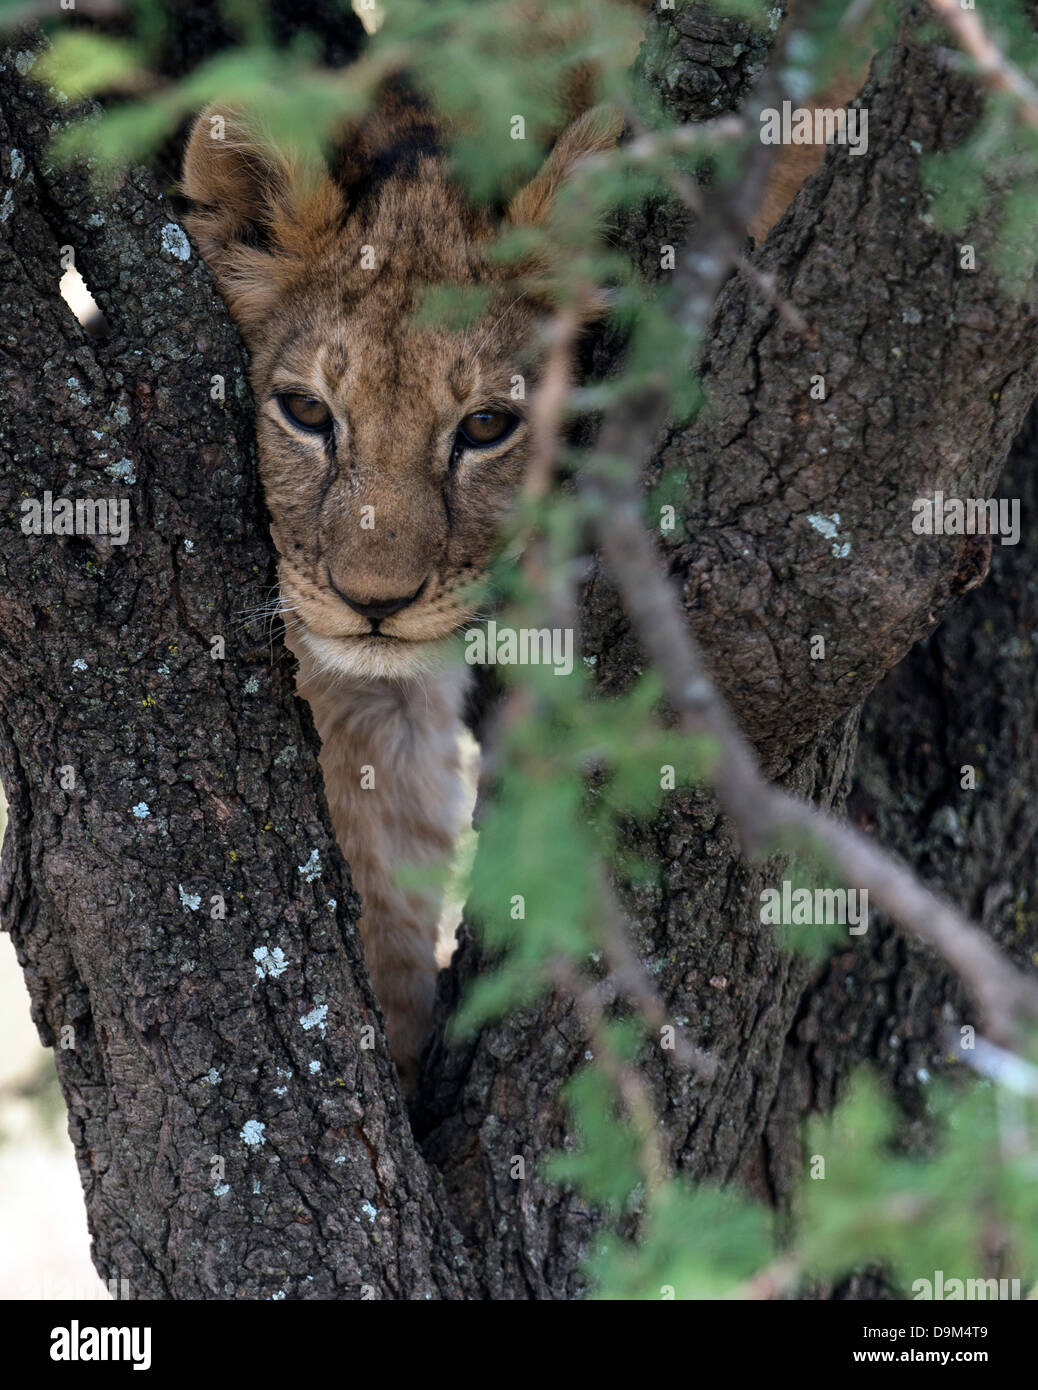 Jeune lion Panthera leo sur un arbre au Kenya Afrique Masai Mara Banque D'Images